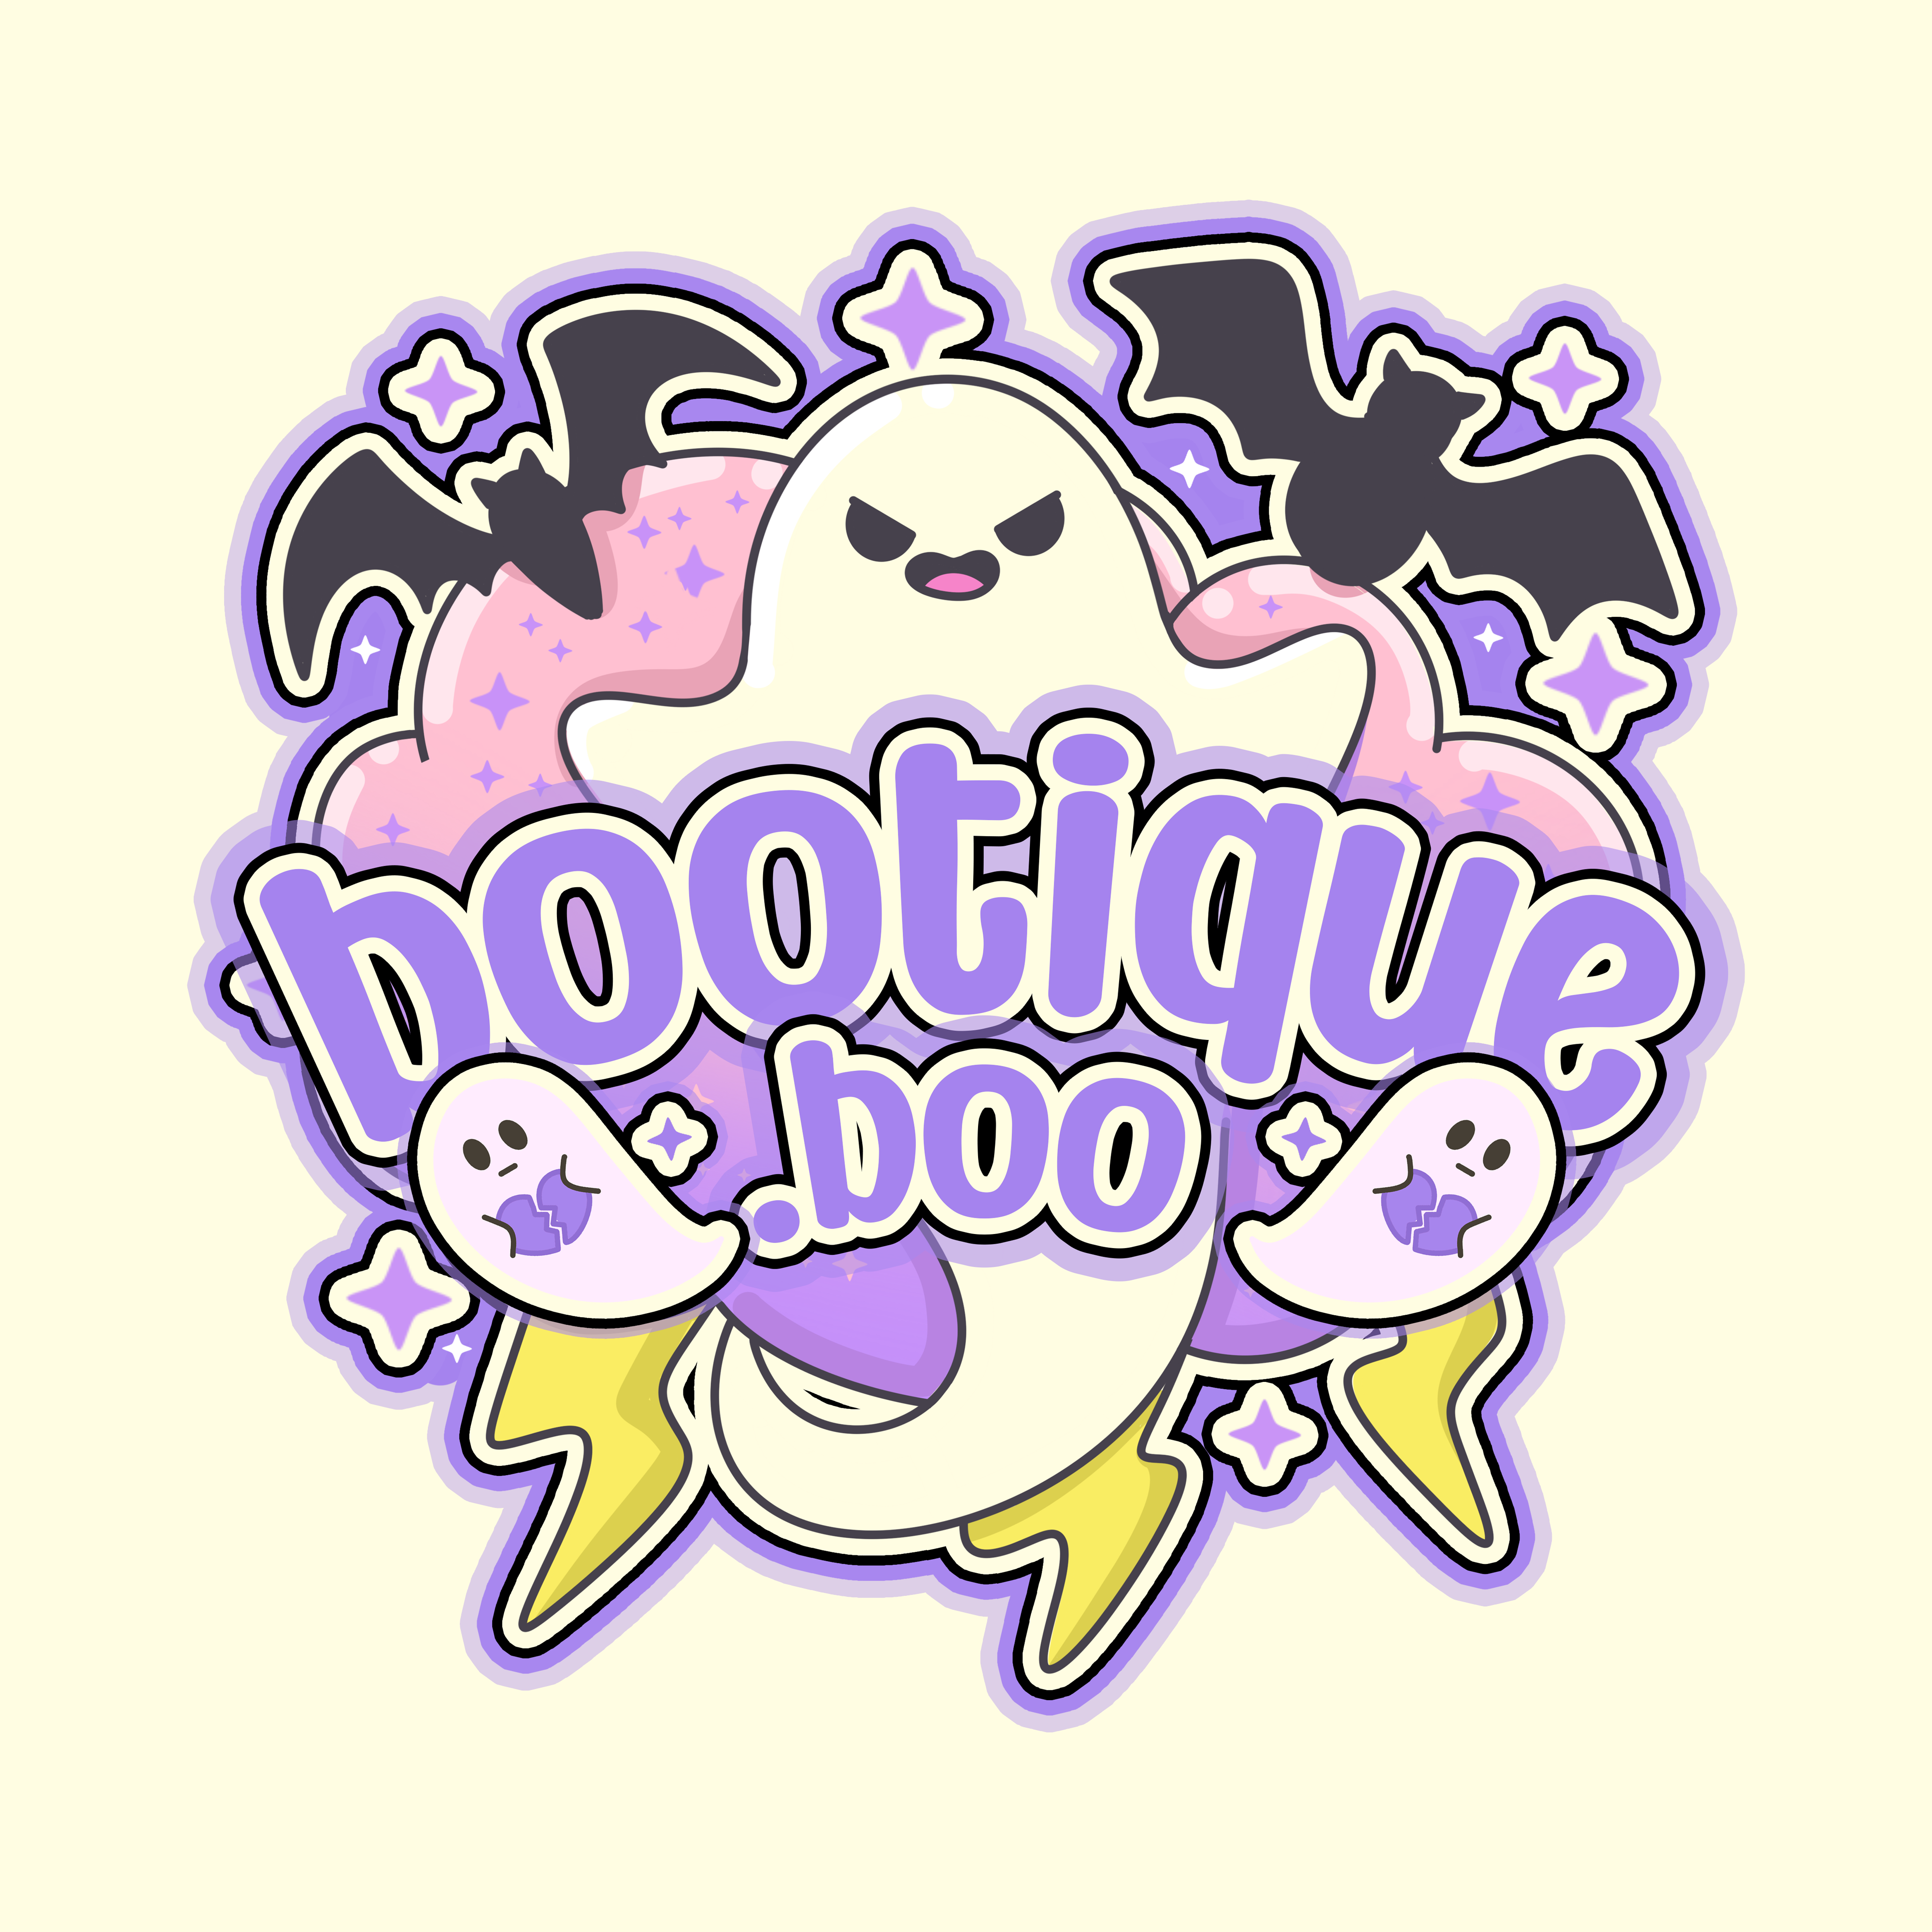 Bootique.boo Logo